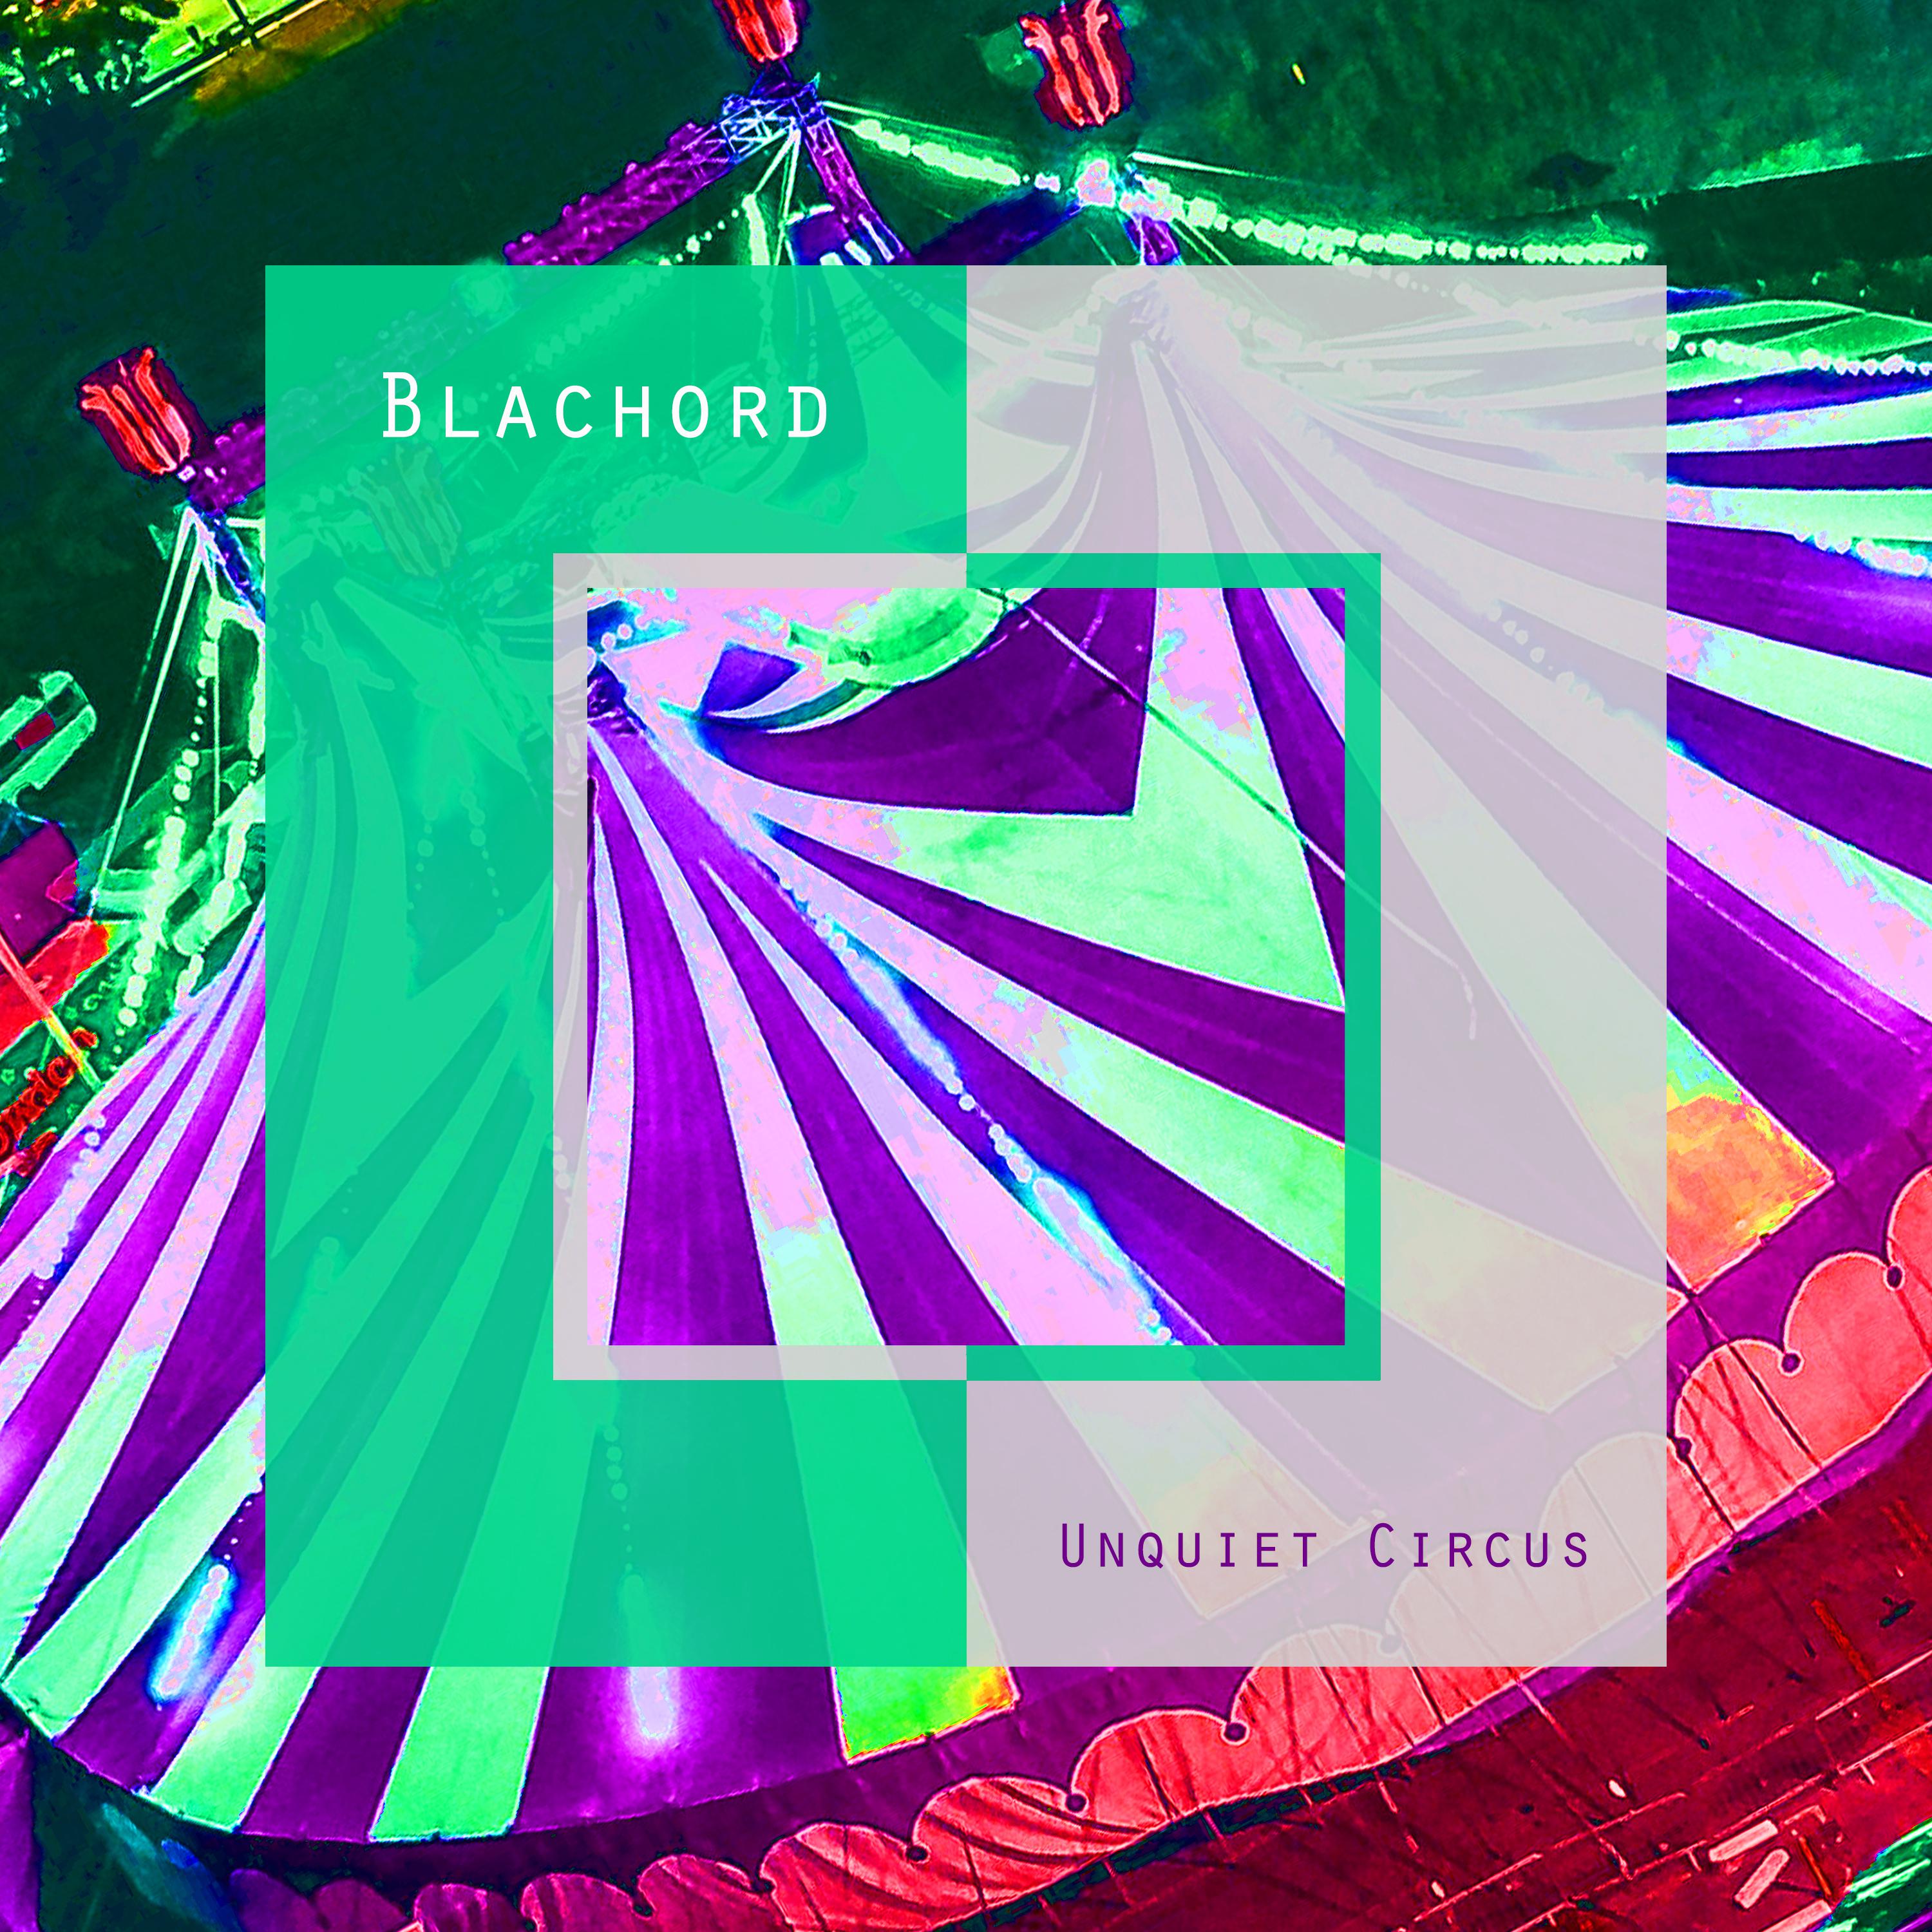 Blachord - Unquiet Circus (Michael Esse Remix)